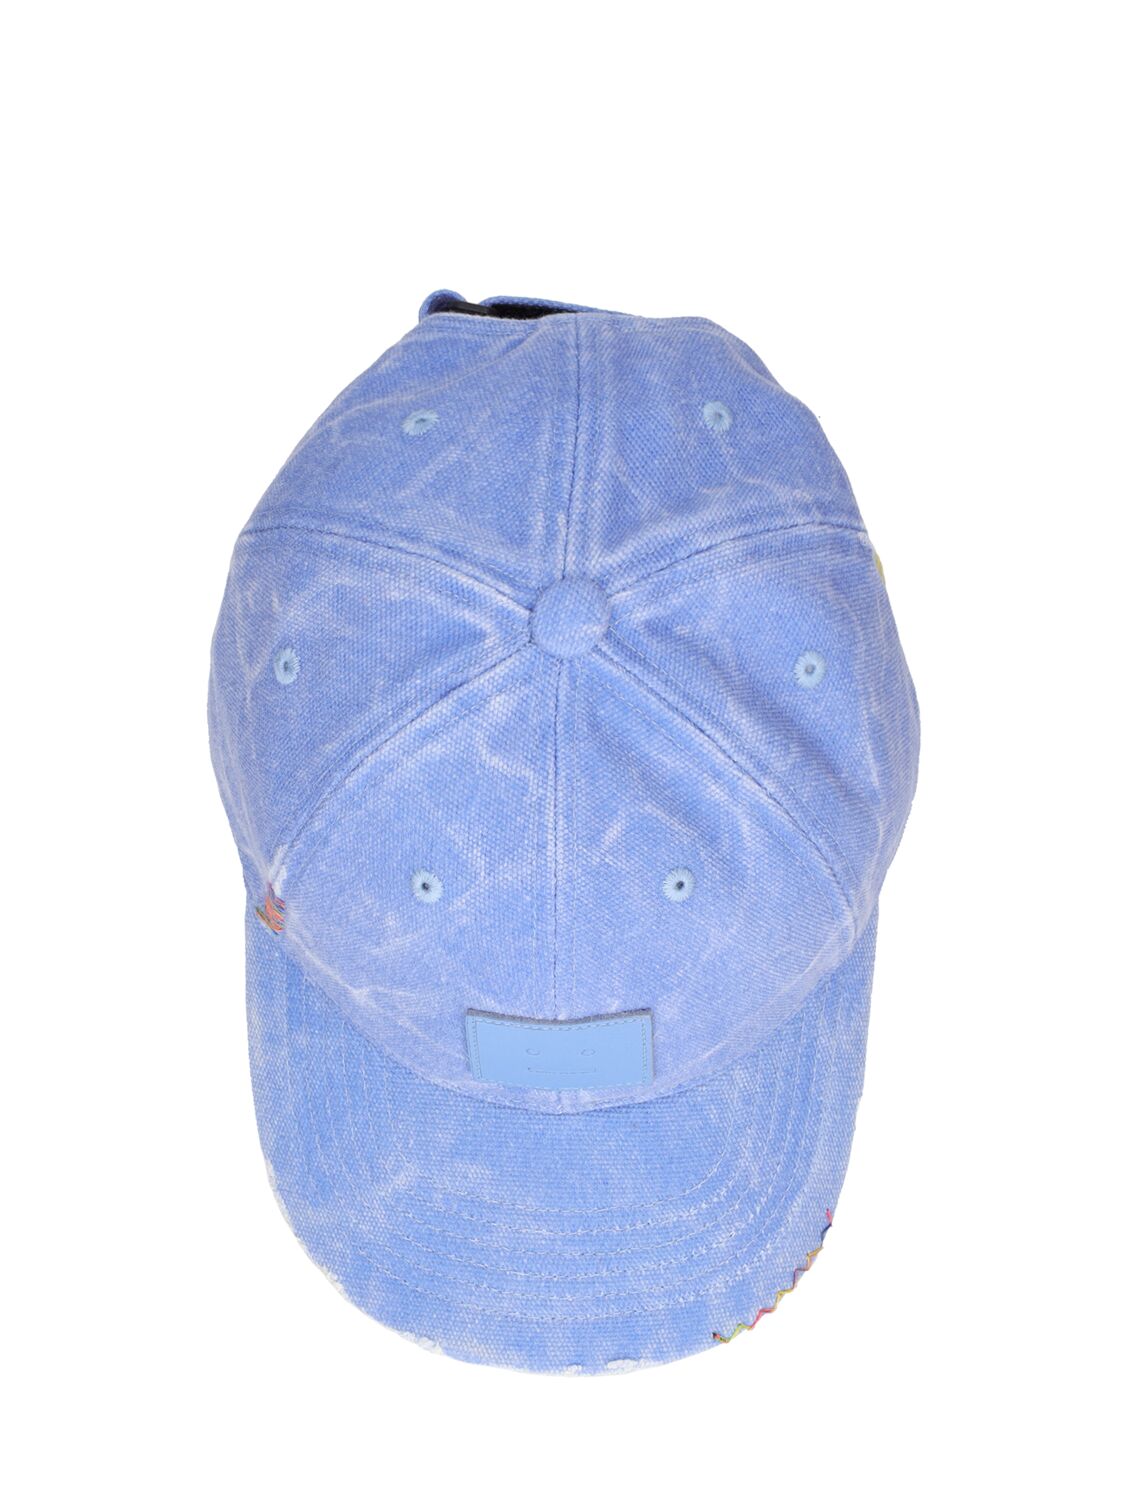 Shop Acne Studios Cunov Distressed Canvas Baseball Hat In Powder Blue